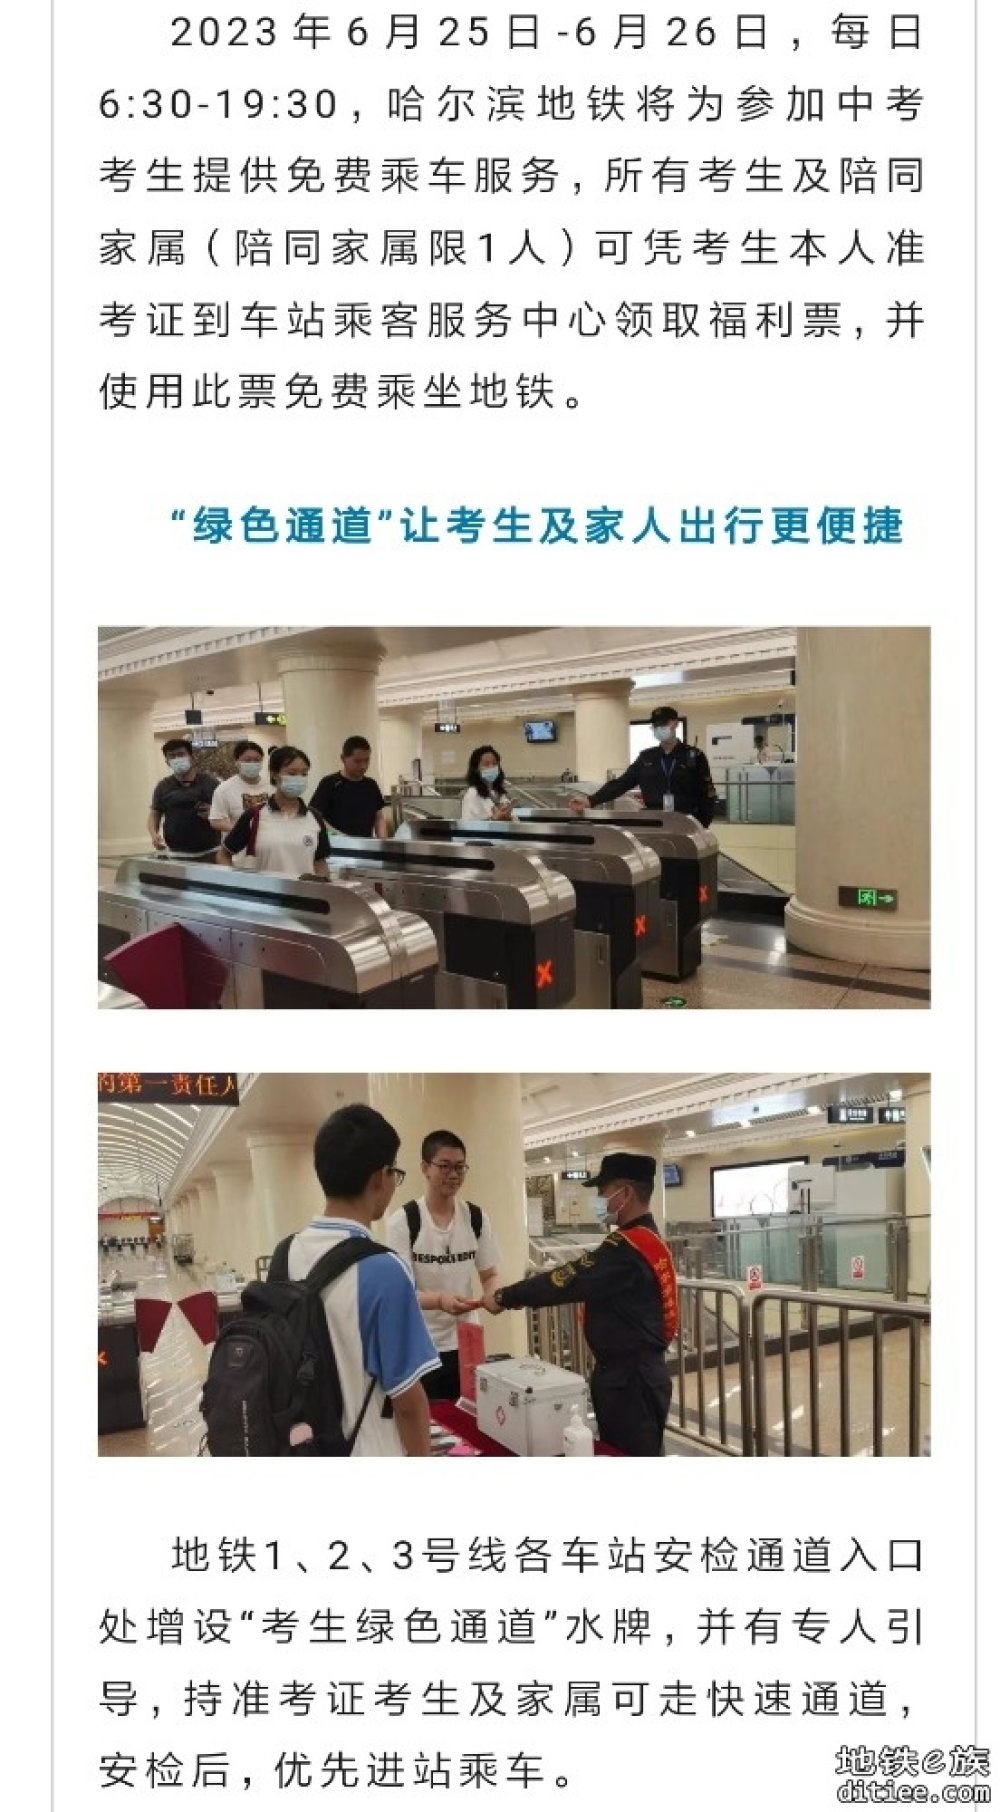 “助力中考 ”地铁在行动——哈尔滨地铁为中考考生提供免费乘车服务